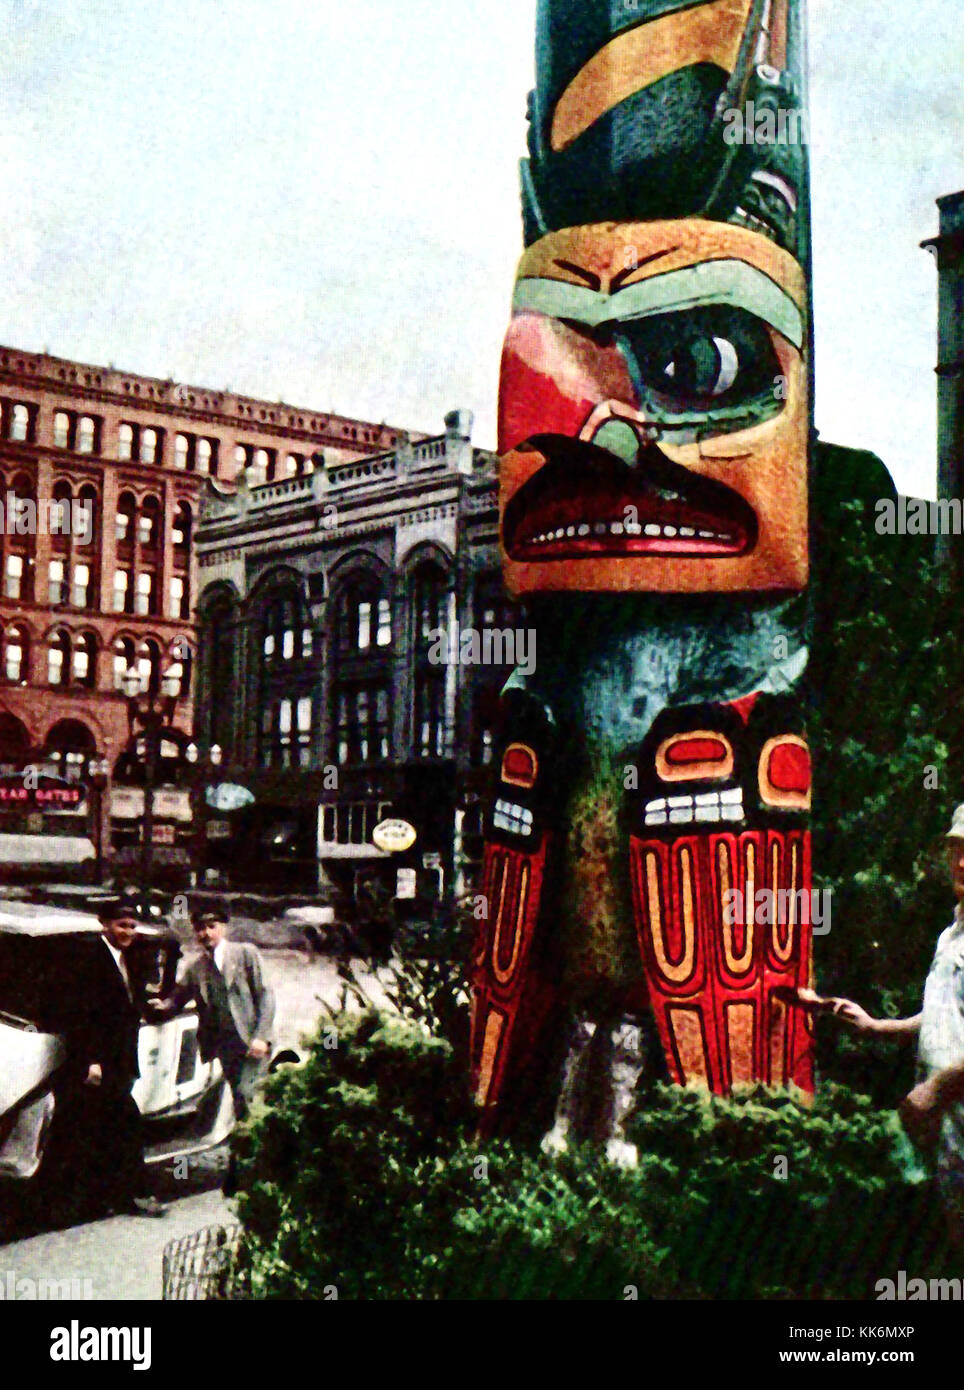 1933 - Vintage Farbfoto der gebürtigen indischen Totem Pole im Pioneer Square, Downtown Seattle. Ursprünglich aus der Tlingit Dorf Tongass. Auf der rechten Seite einen Mann gesehen, gibt es einen neuen Anstrich. Stockfoto